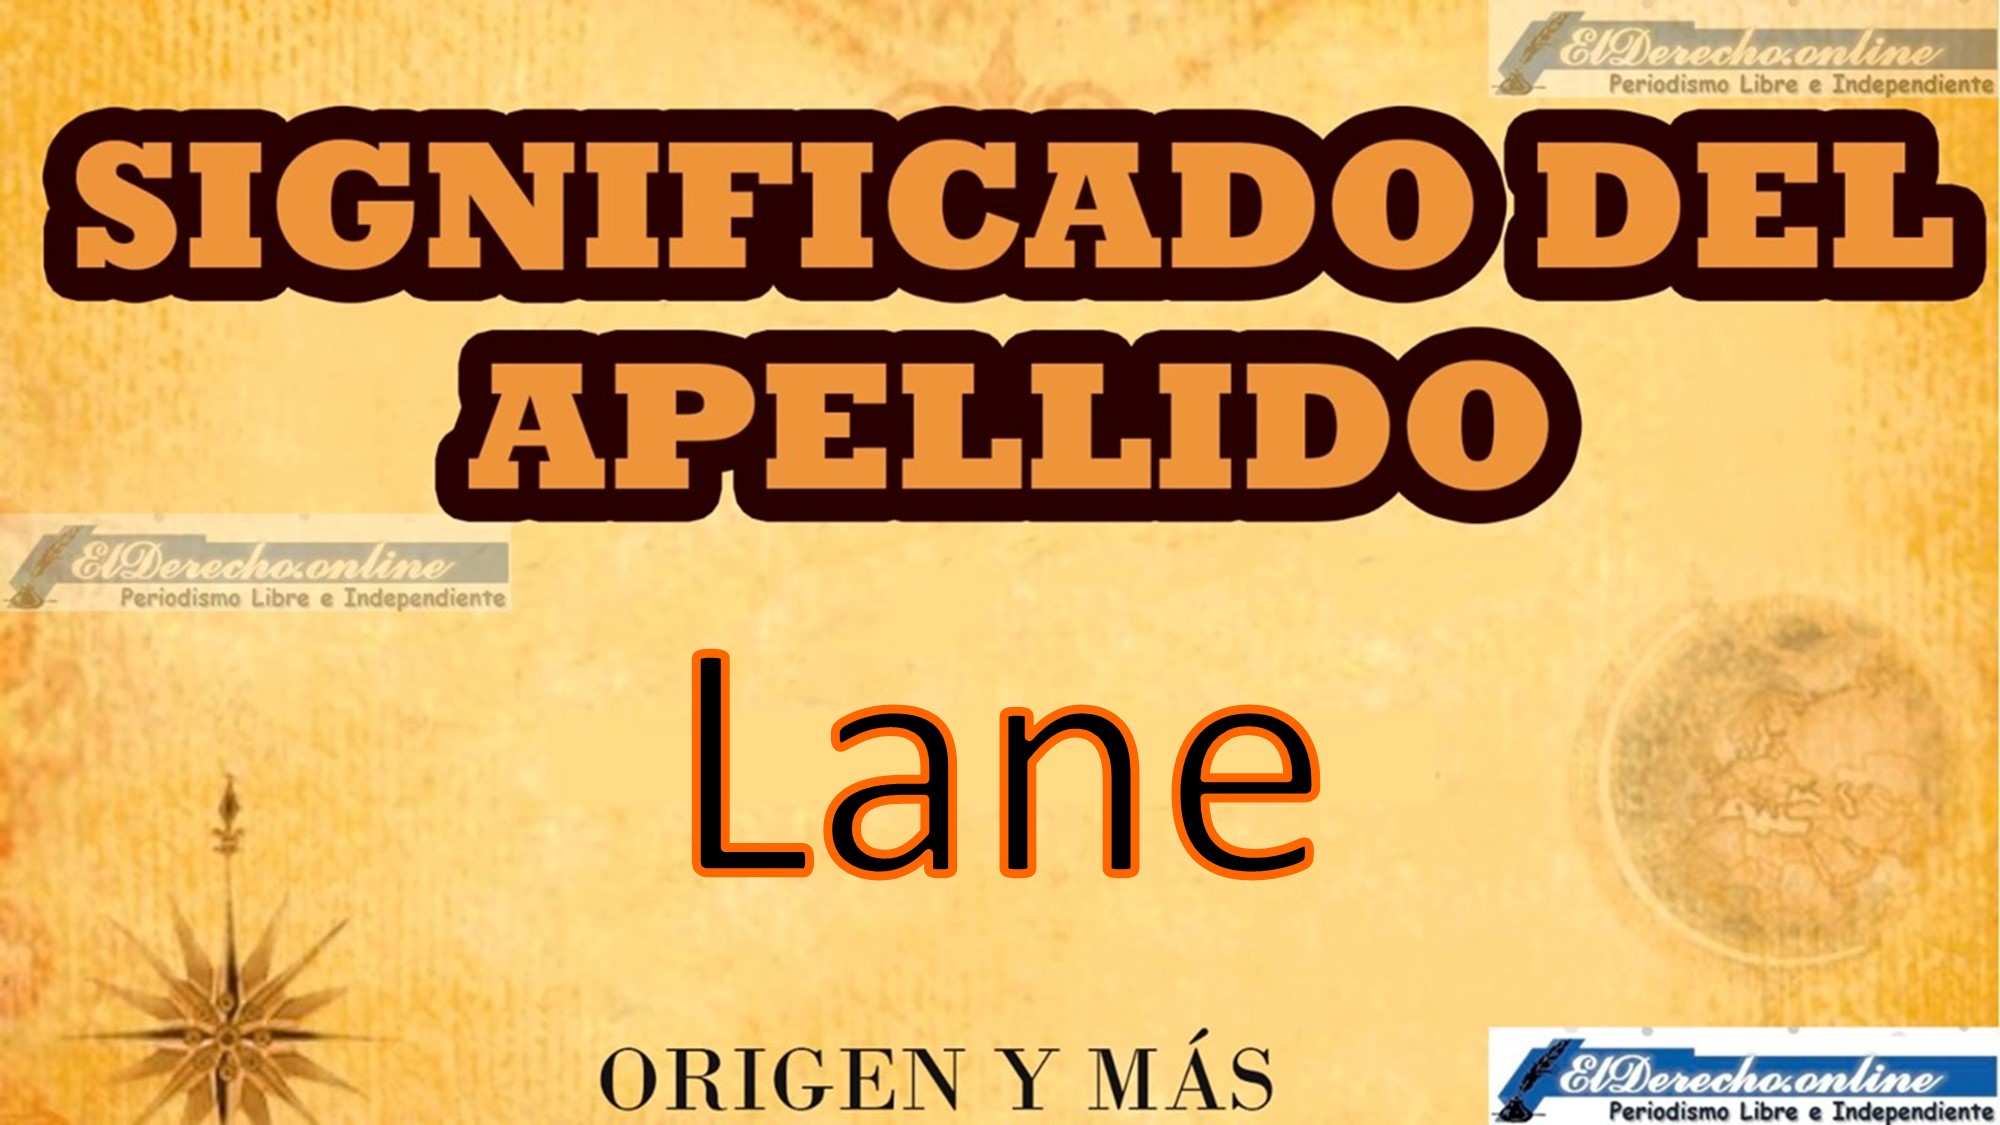 Significado del apellido Lane, Origen y más